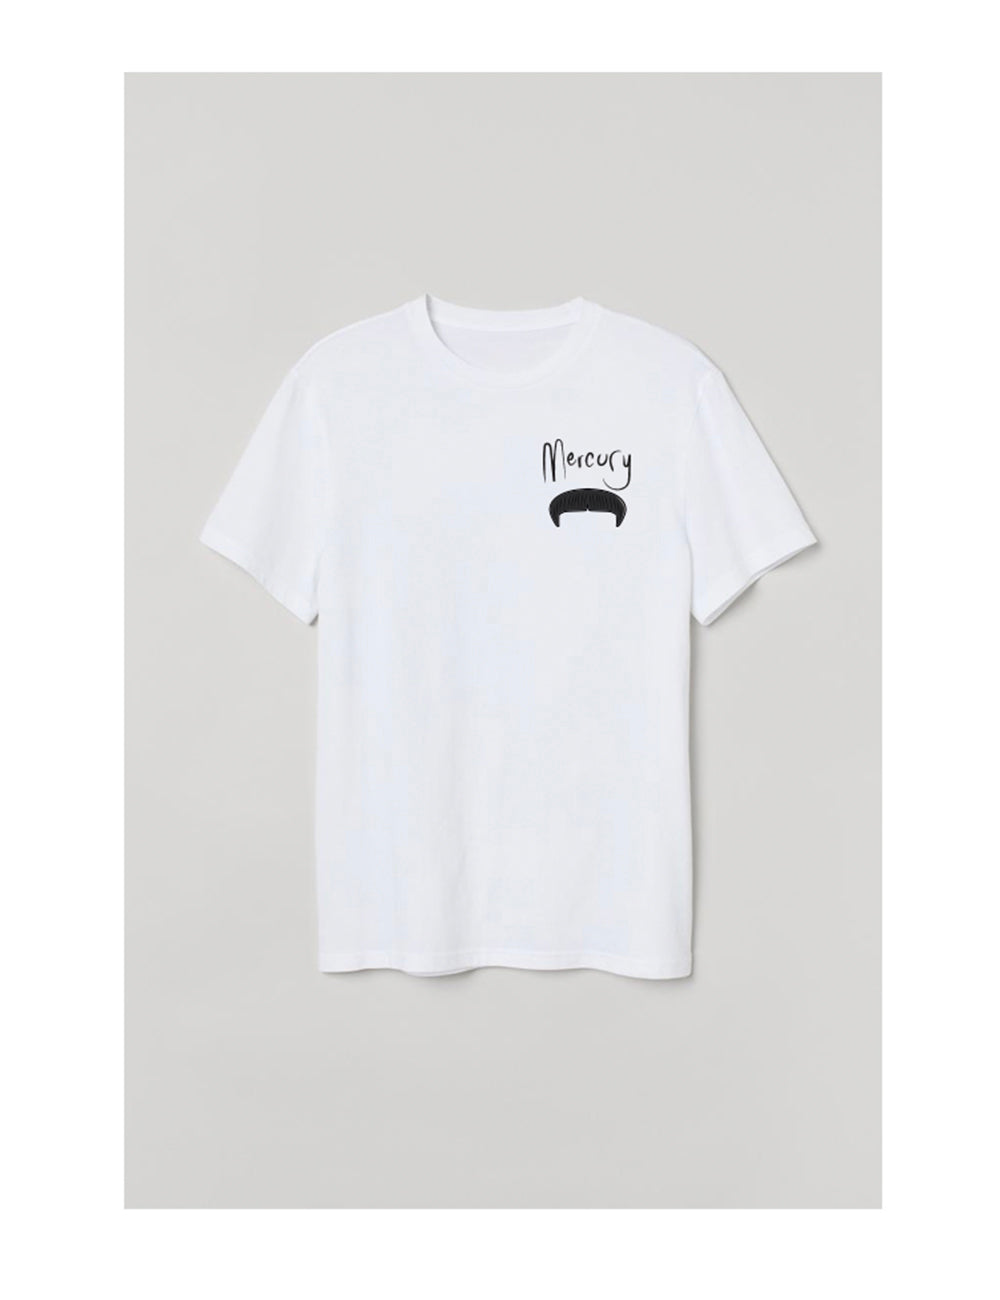 Famous Moustaches - La Mercury - T-shirt Unisexe